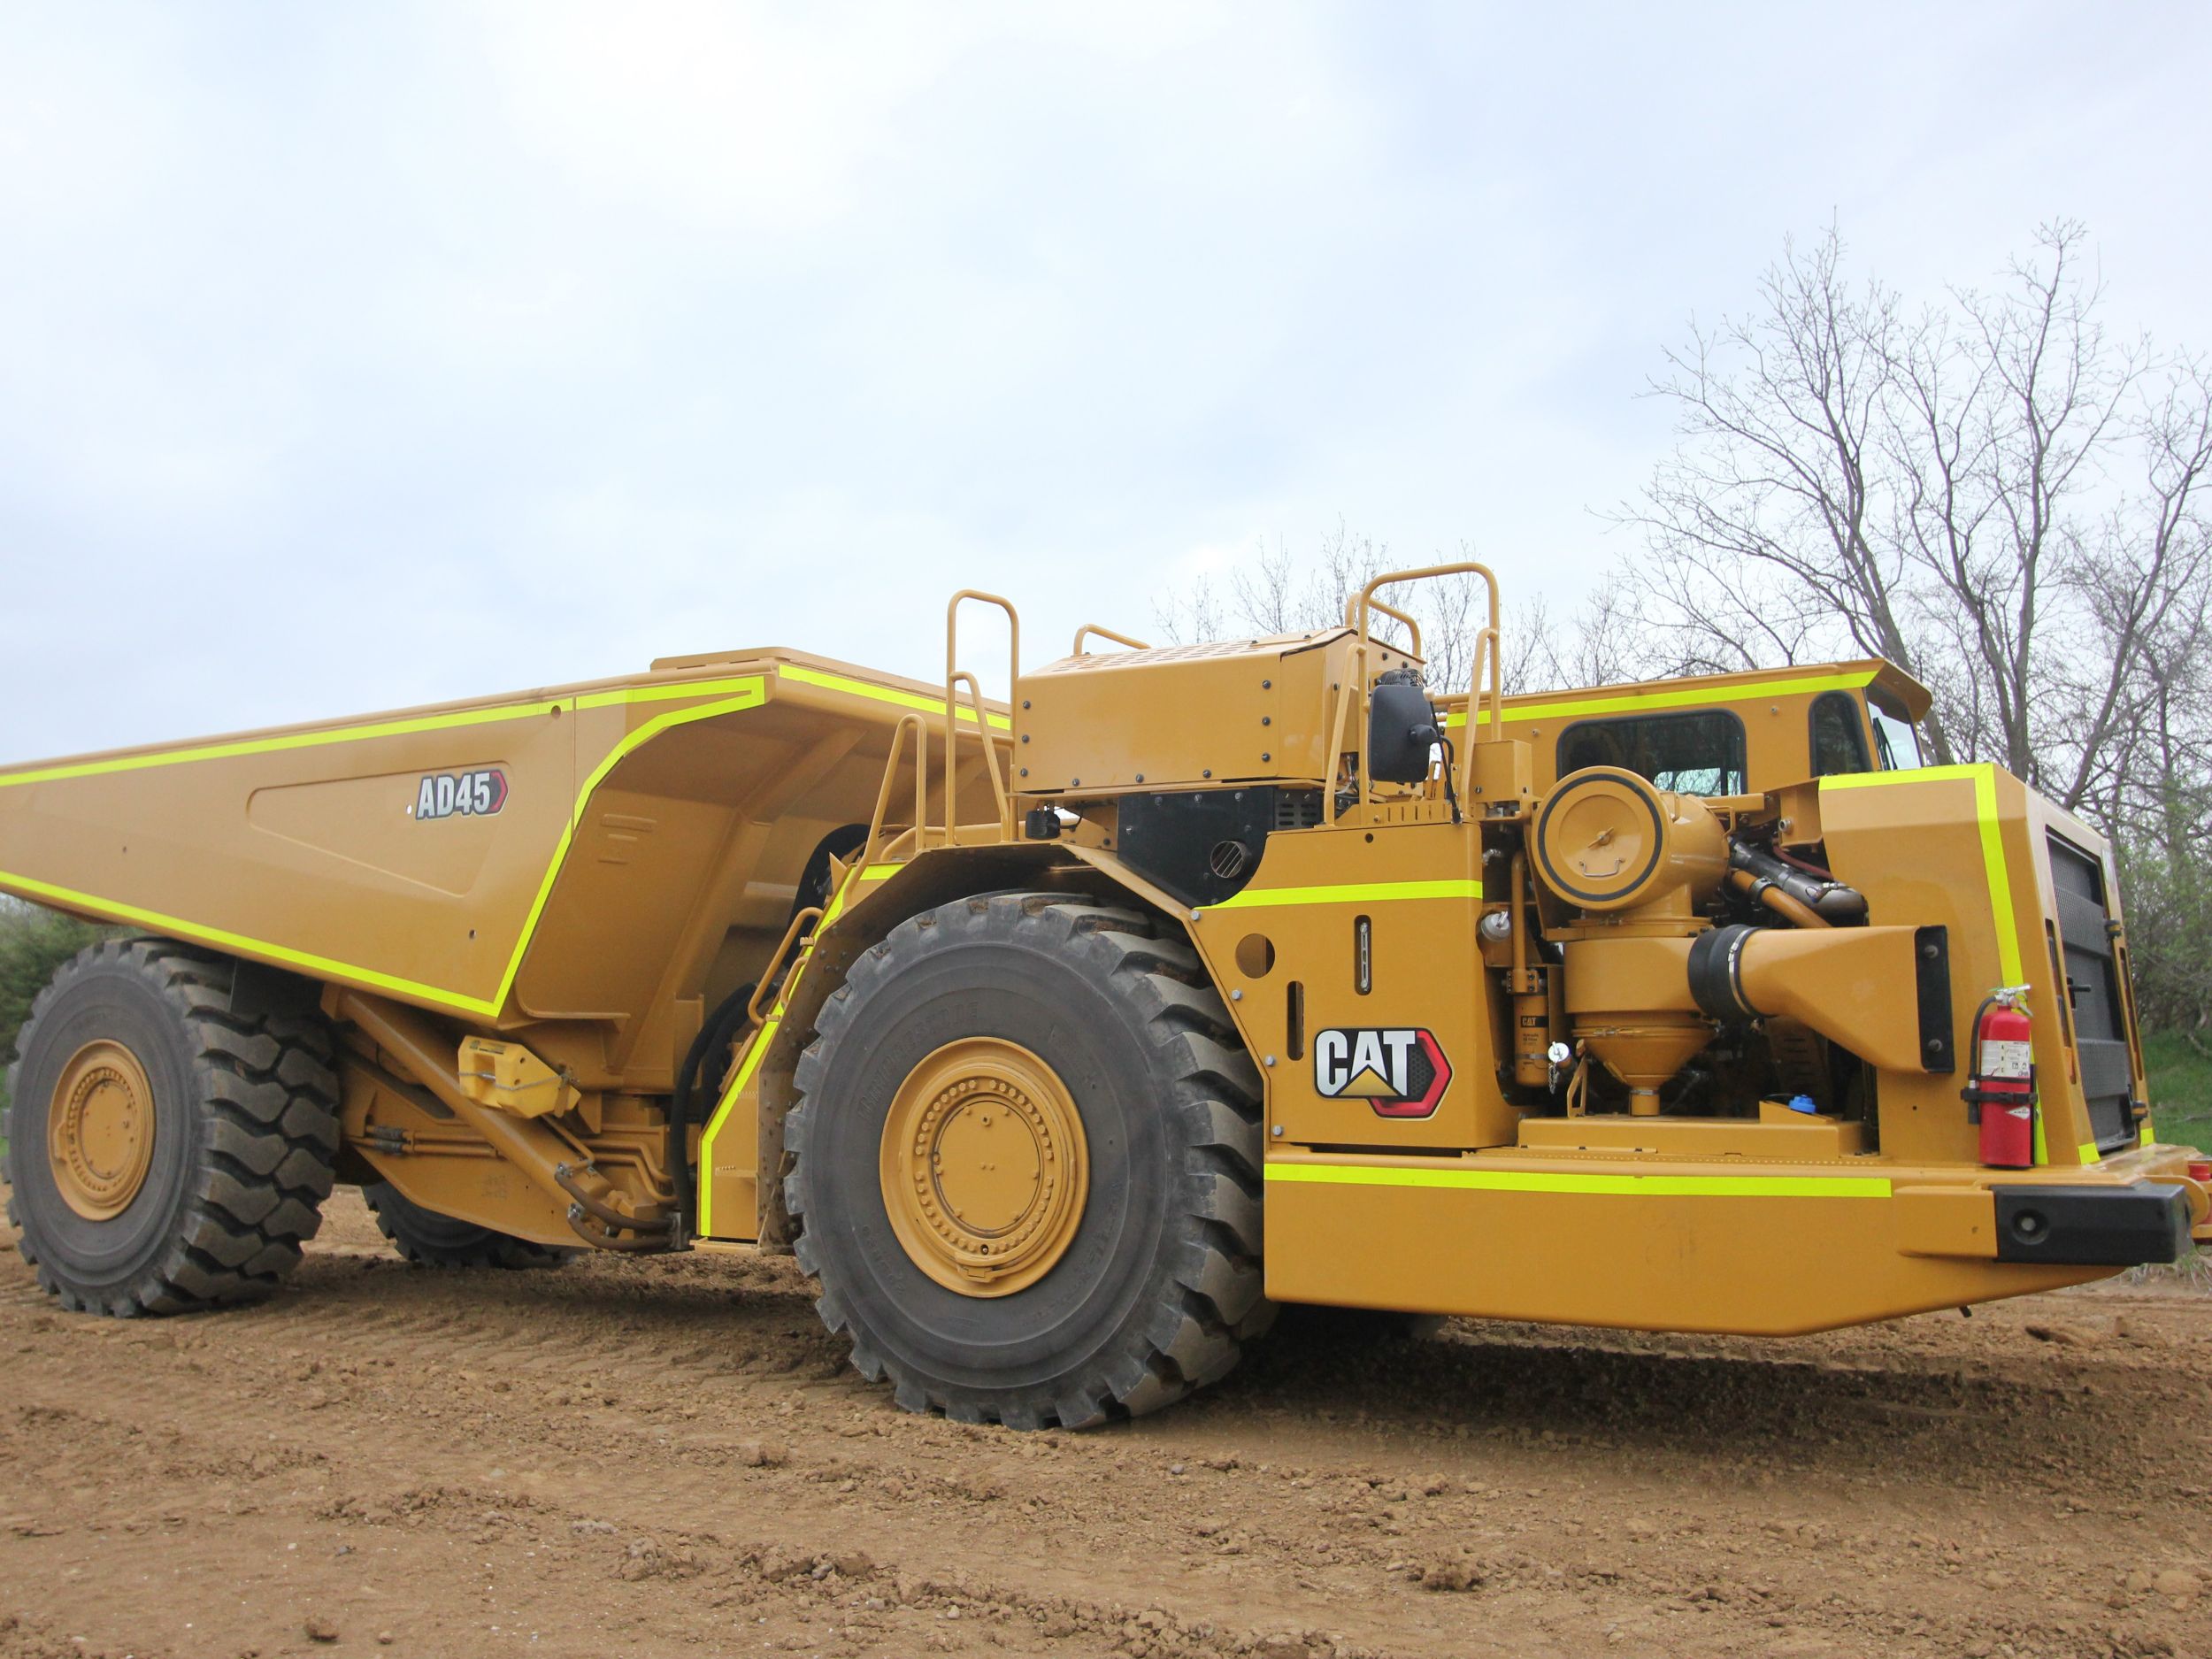 Caterpillar apresenta novo caminhão articulado subterrâneo AD63 - Blog do  Caminhoneiro